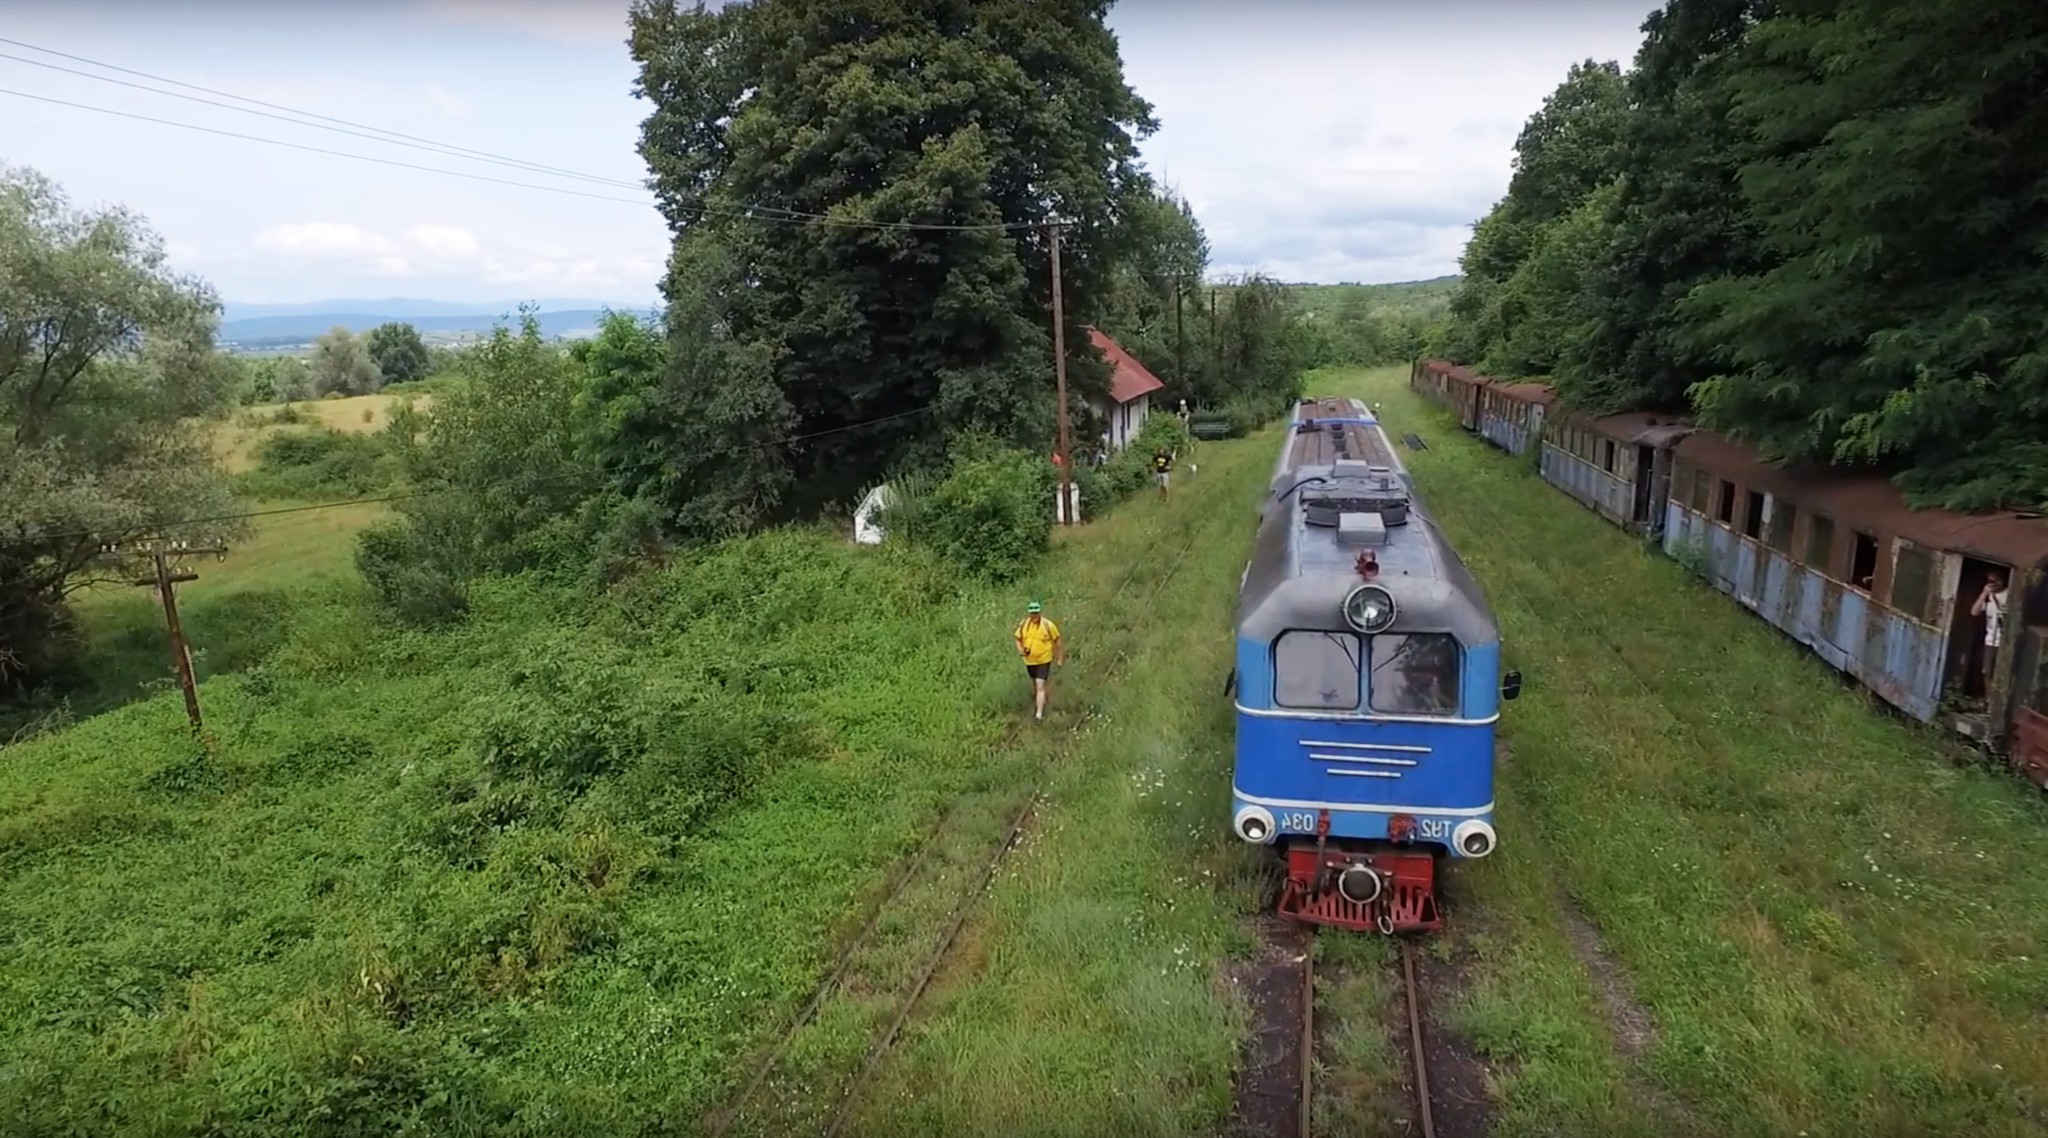 Zakarpattia Narrow-Gauge Railway of the Future